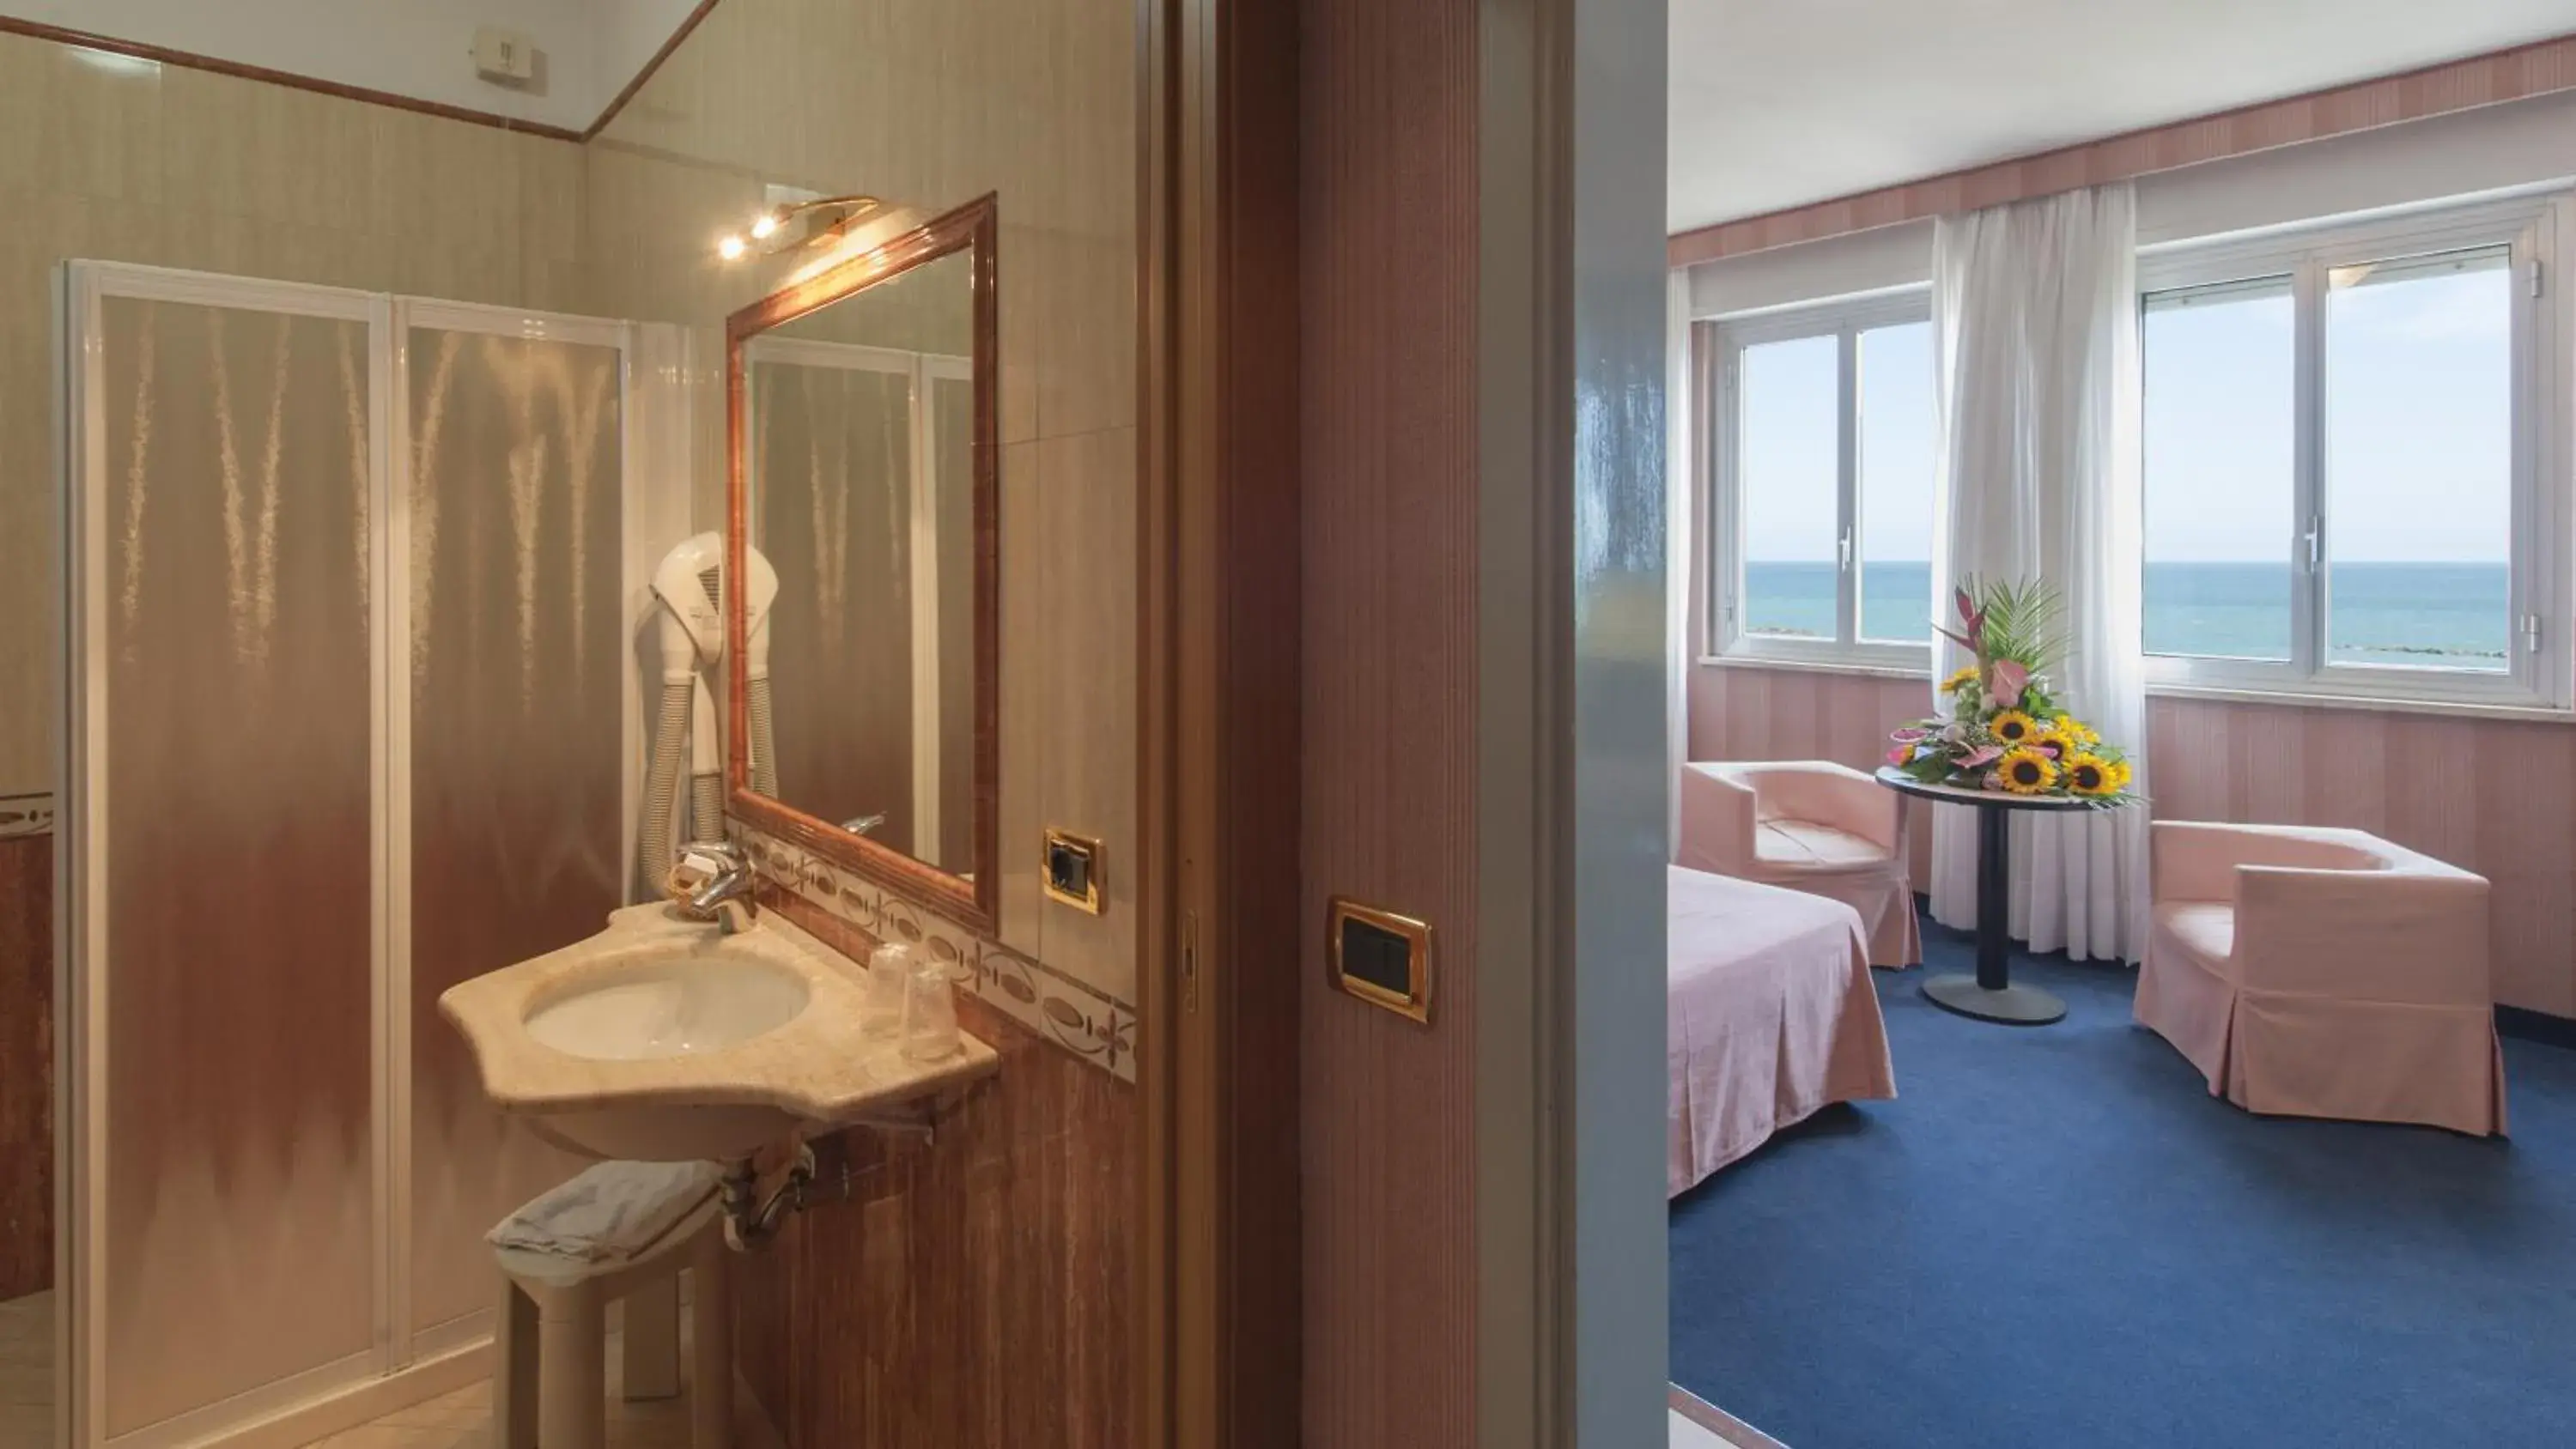 Photo of the whole room, Bathroom in Hotel Esplanade